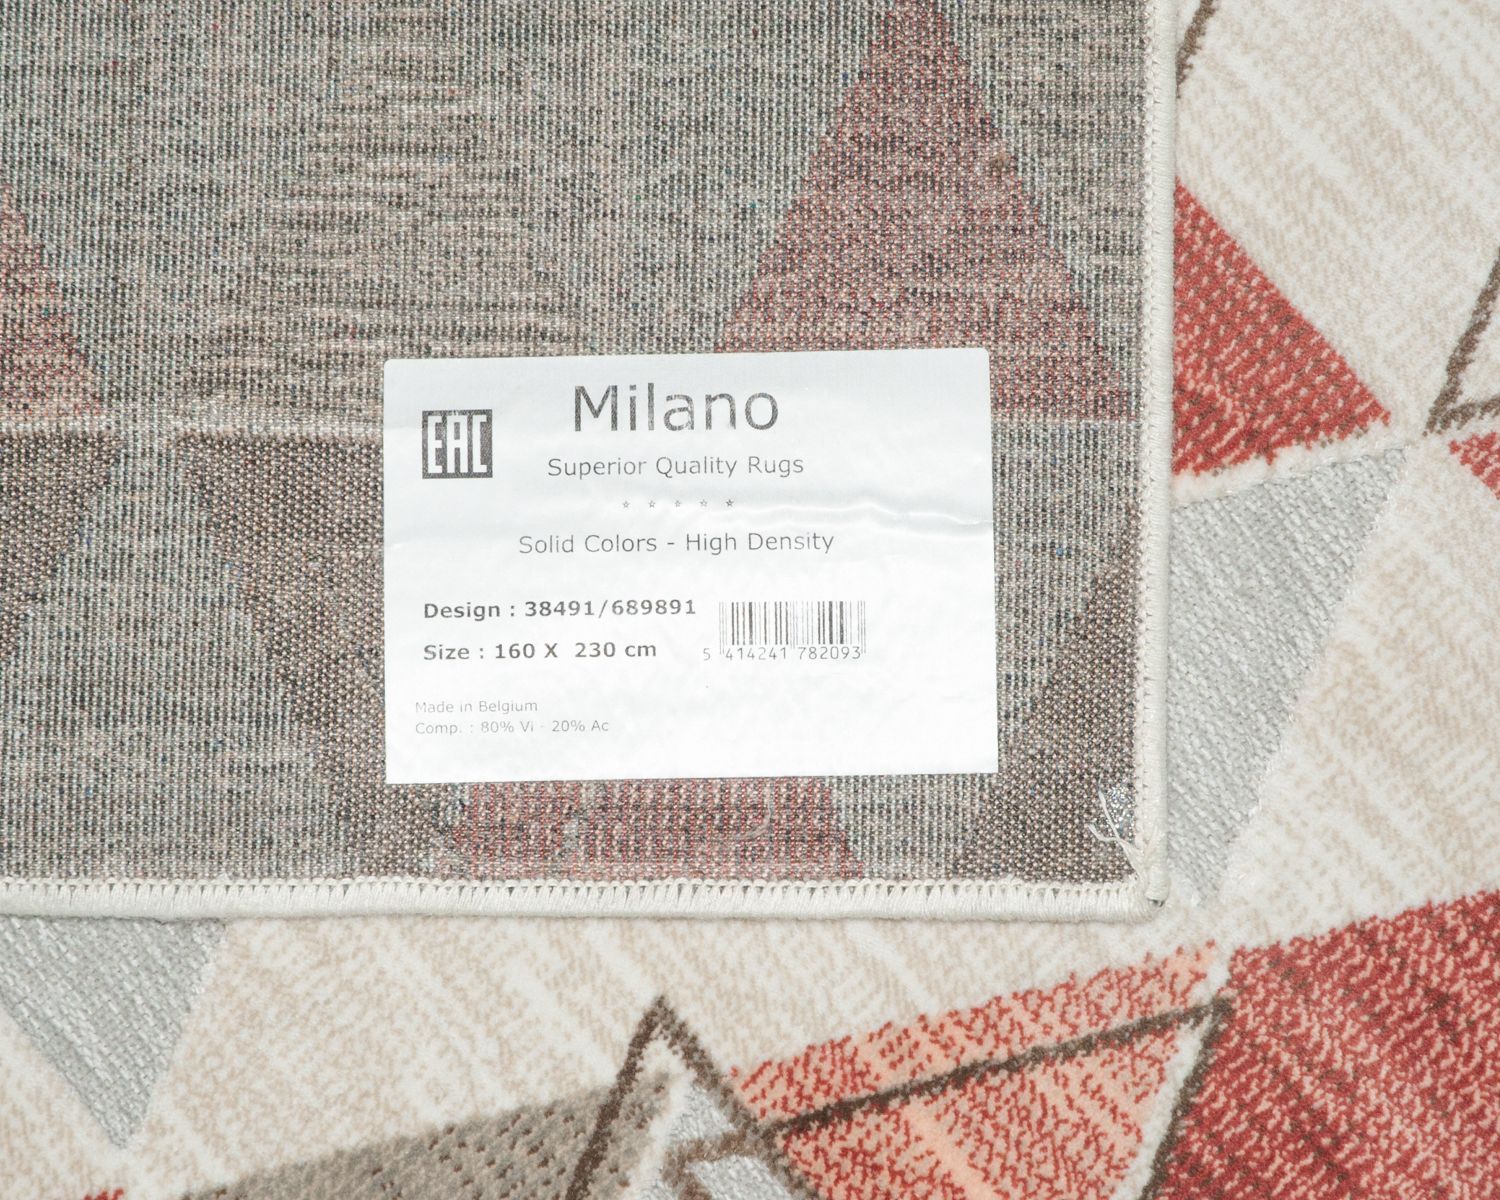 ковер Milano 38491 689891 grey/pink